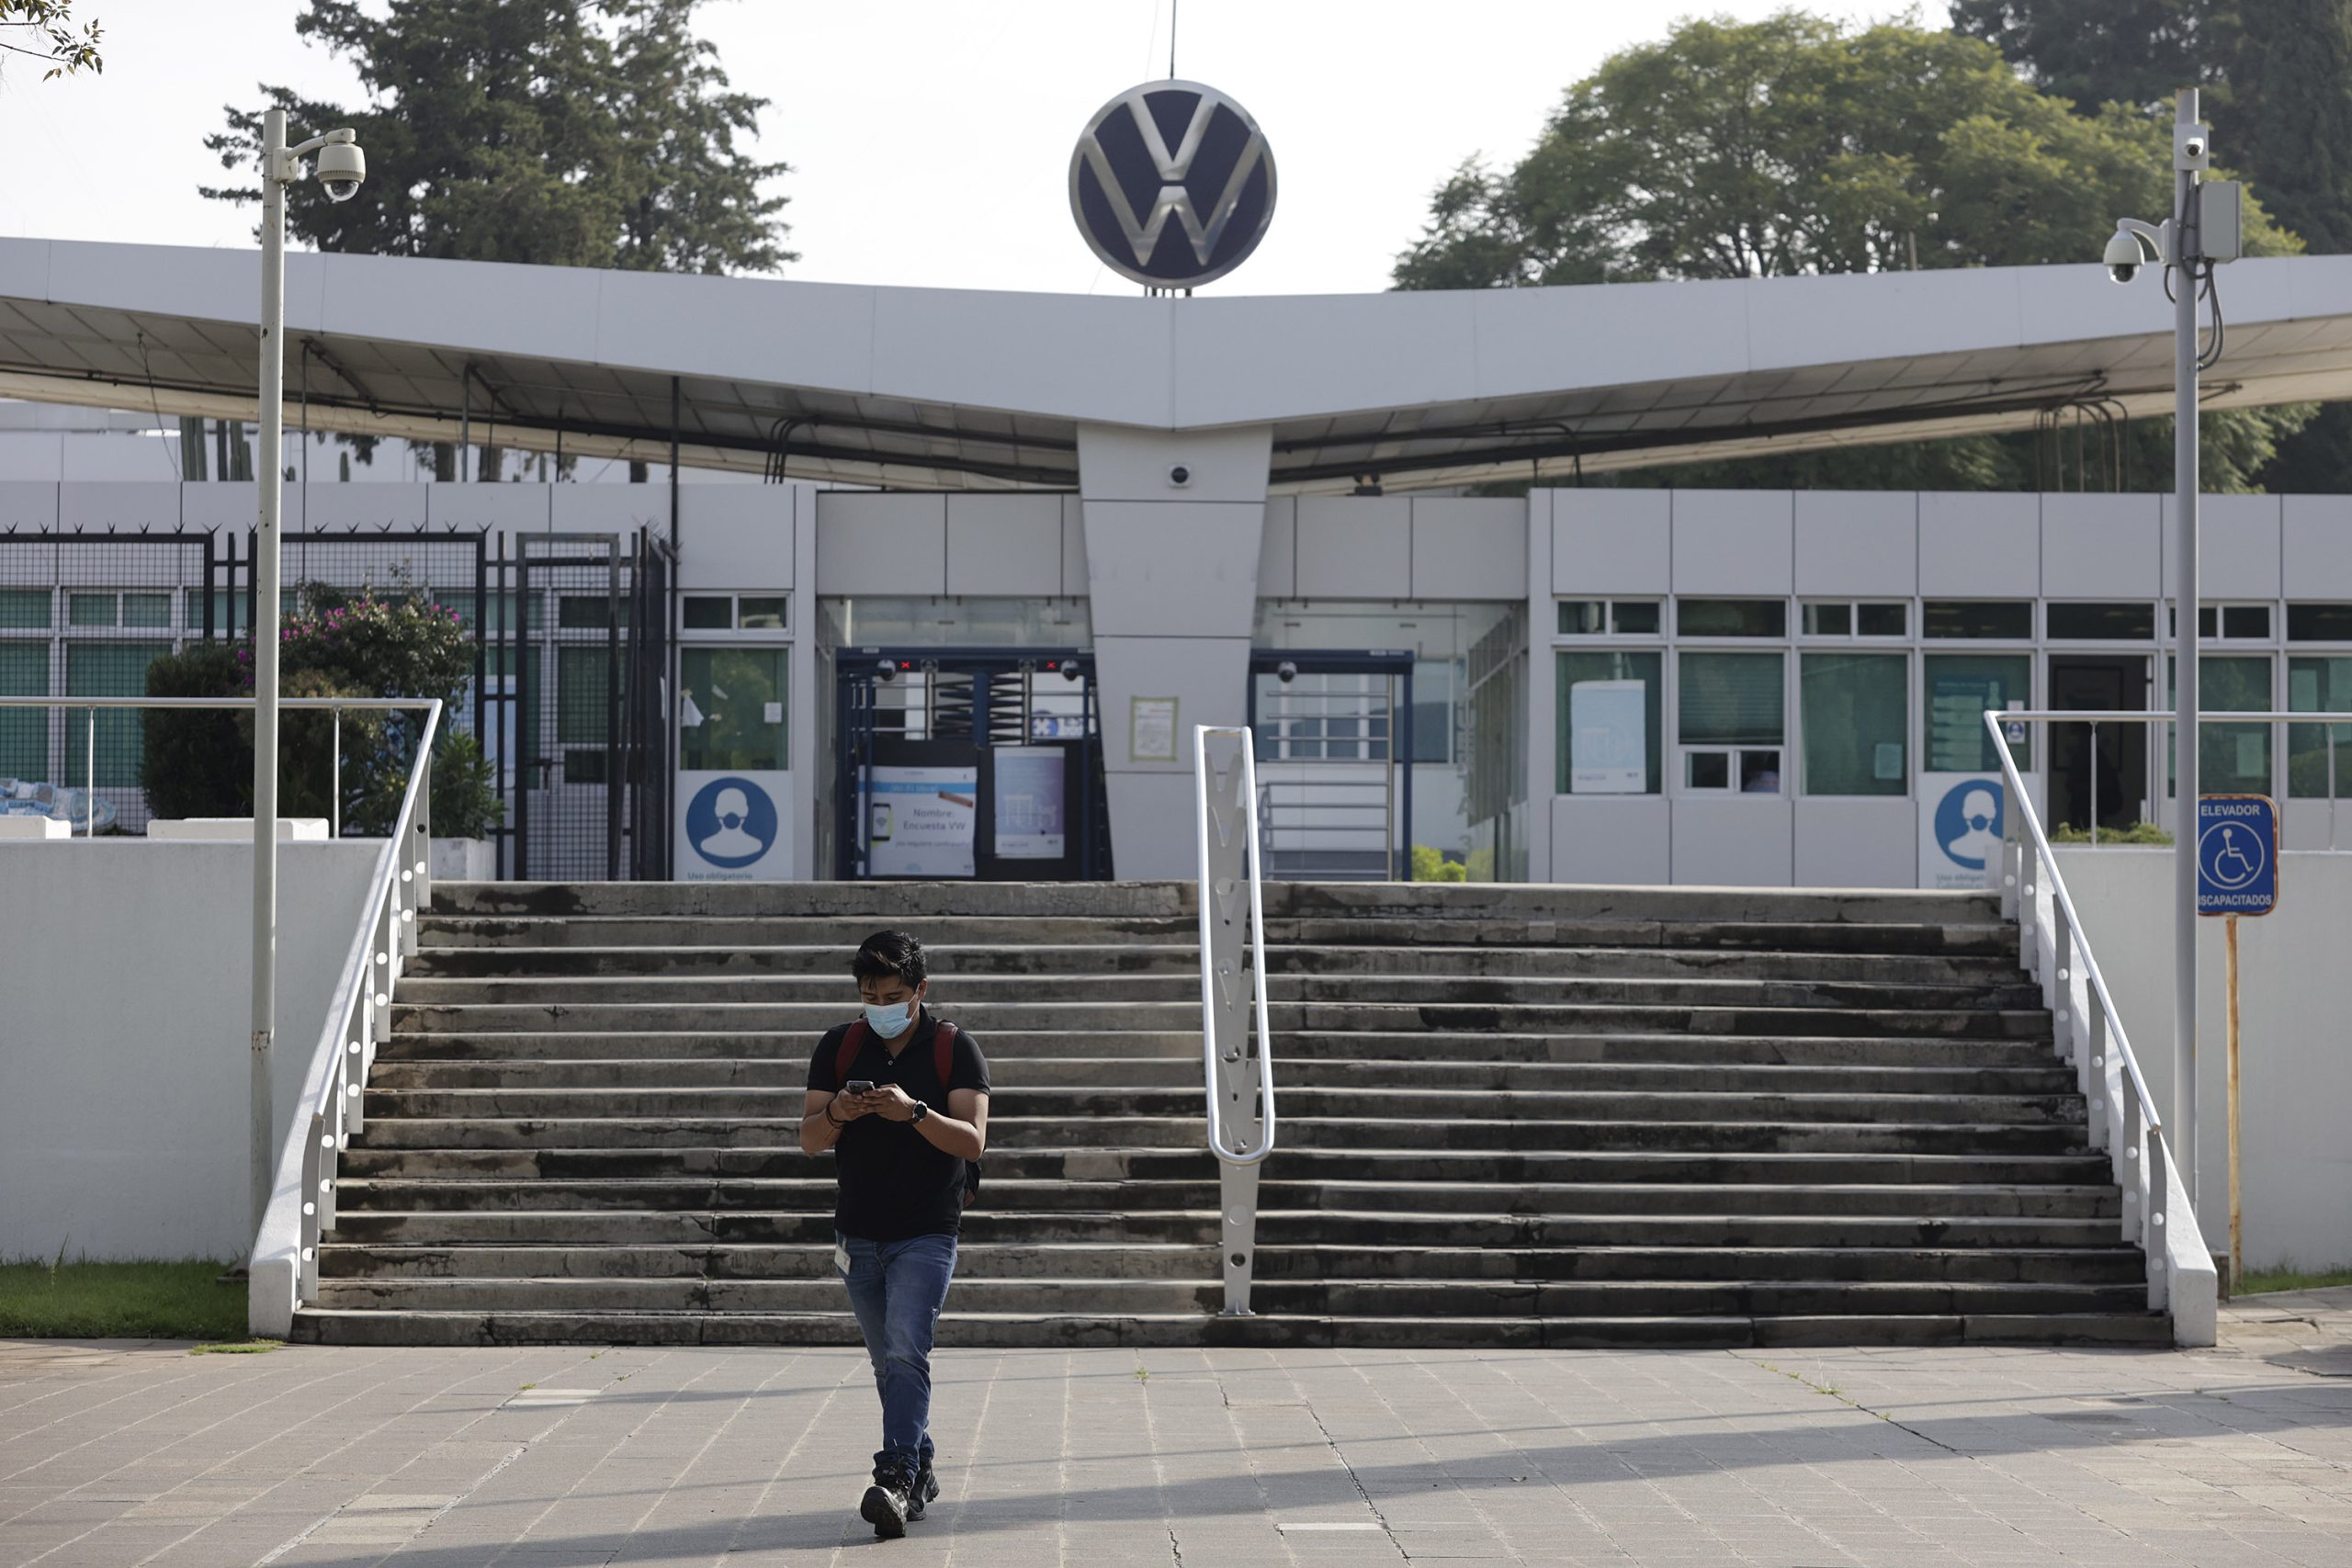 Gobierno intervendrá en negociación salarial entre VW y sindicato